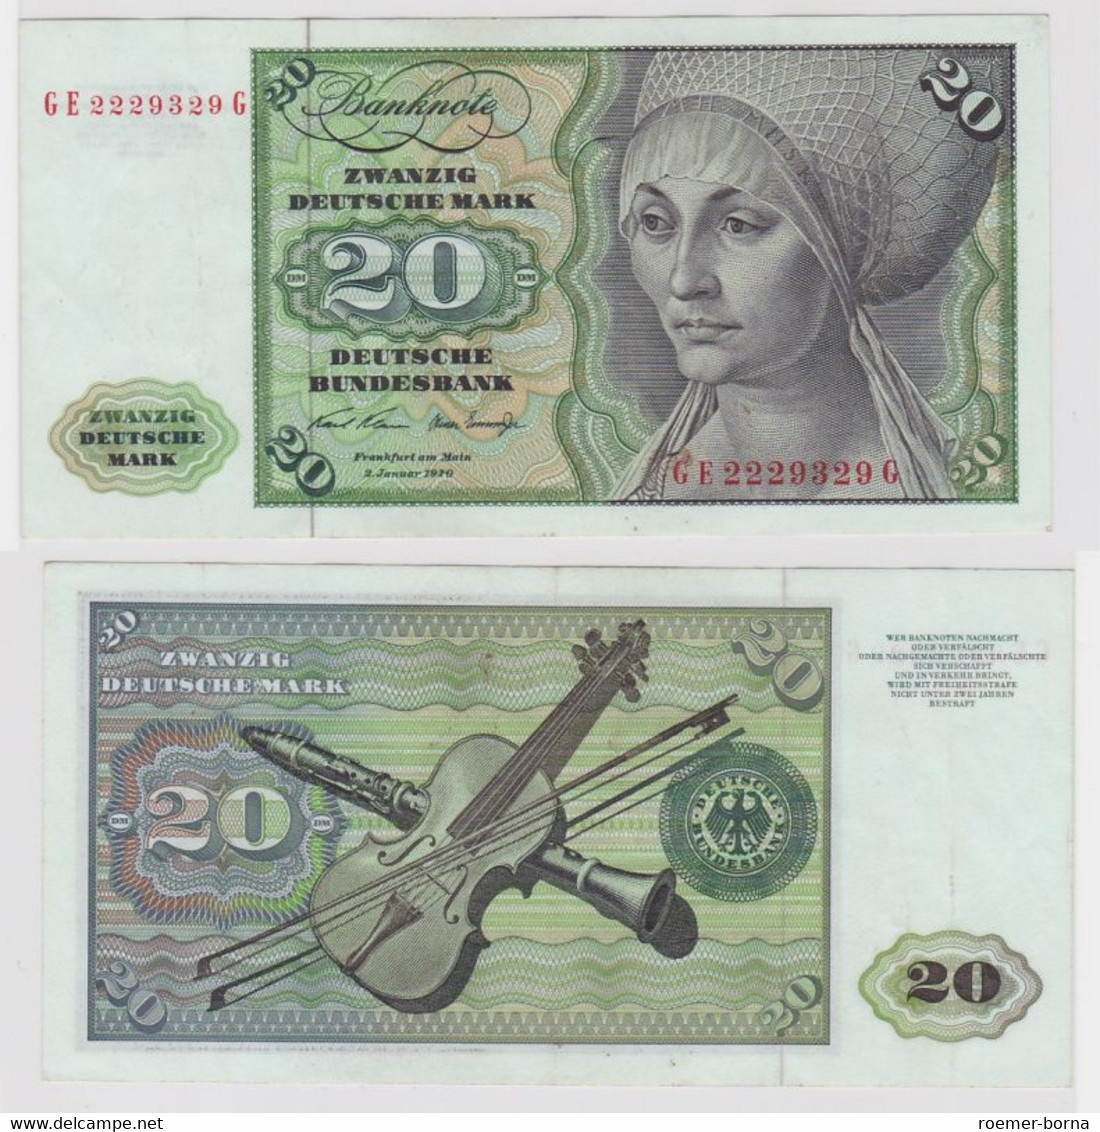 T114014 Banknote 20 DM Deutsche Mark Ro. 271b Schein 2.Jan. 1970 KN GE 2229329 G - 20 Deutsche Mark